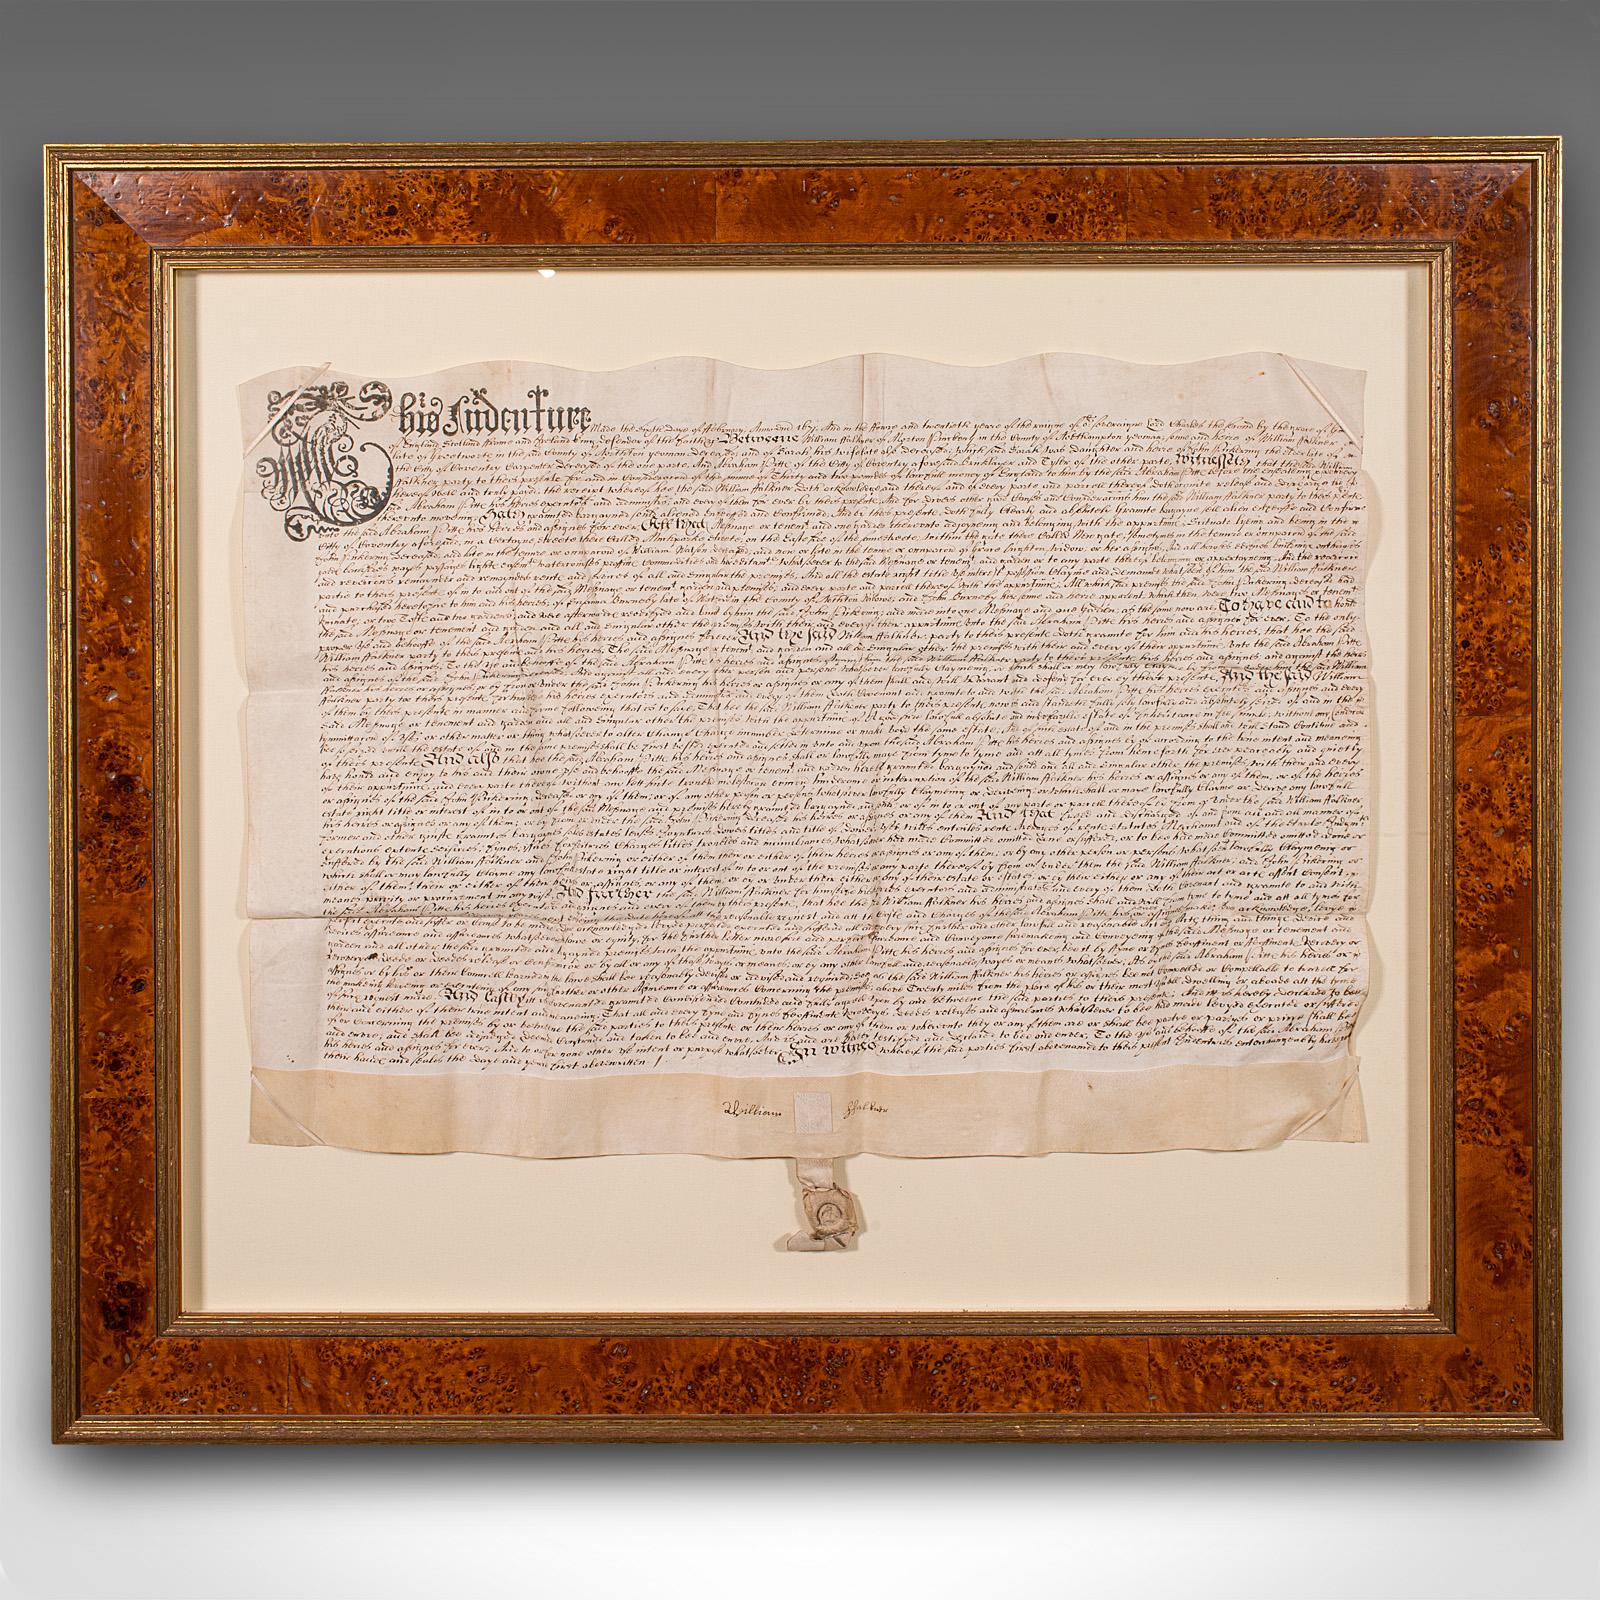 Dies ist ein antiker gerahmter Schuldschein. Ein englisches Dokument aus Pergament in modernem Rahmen, datiert auf das 17. Jahrhundert und später, datiert auf 1671.

Bei den in drei Teilen ausgestellten Indentures handelte es sich um juristische